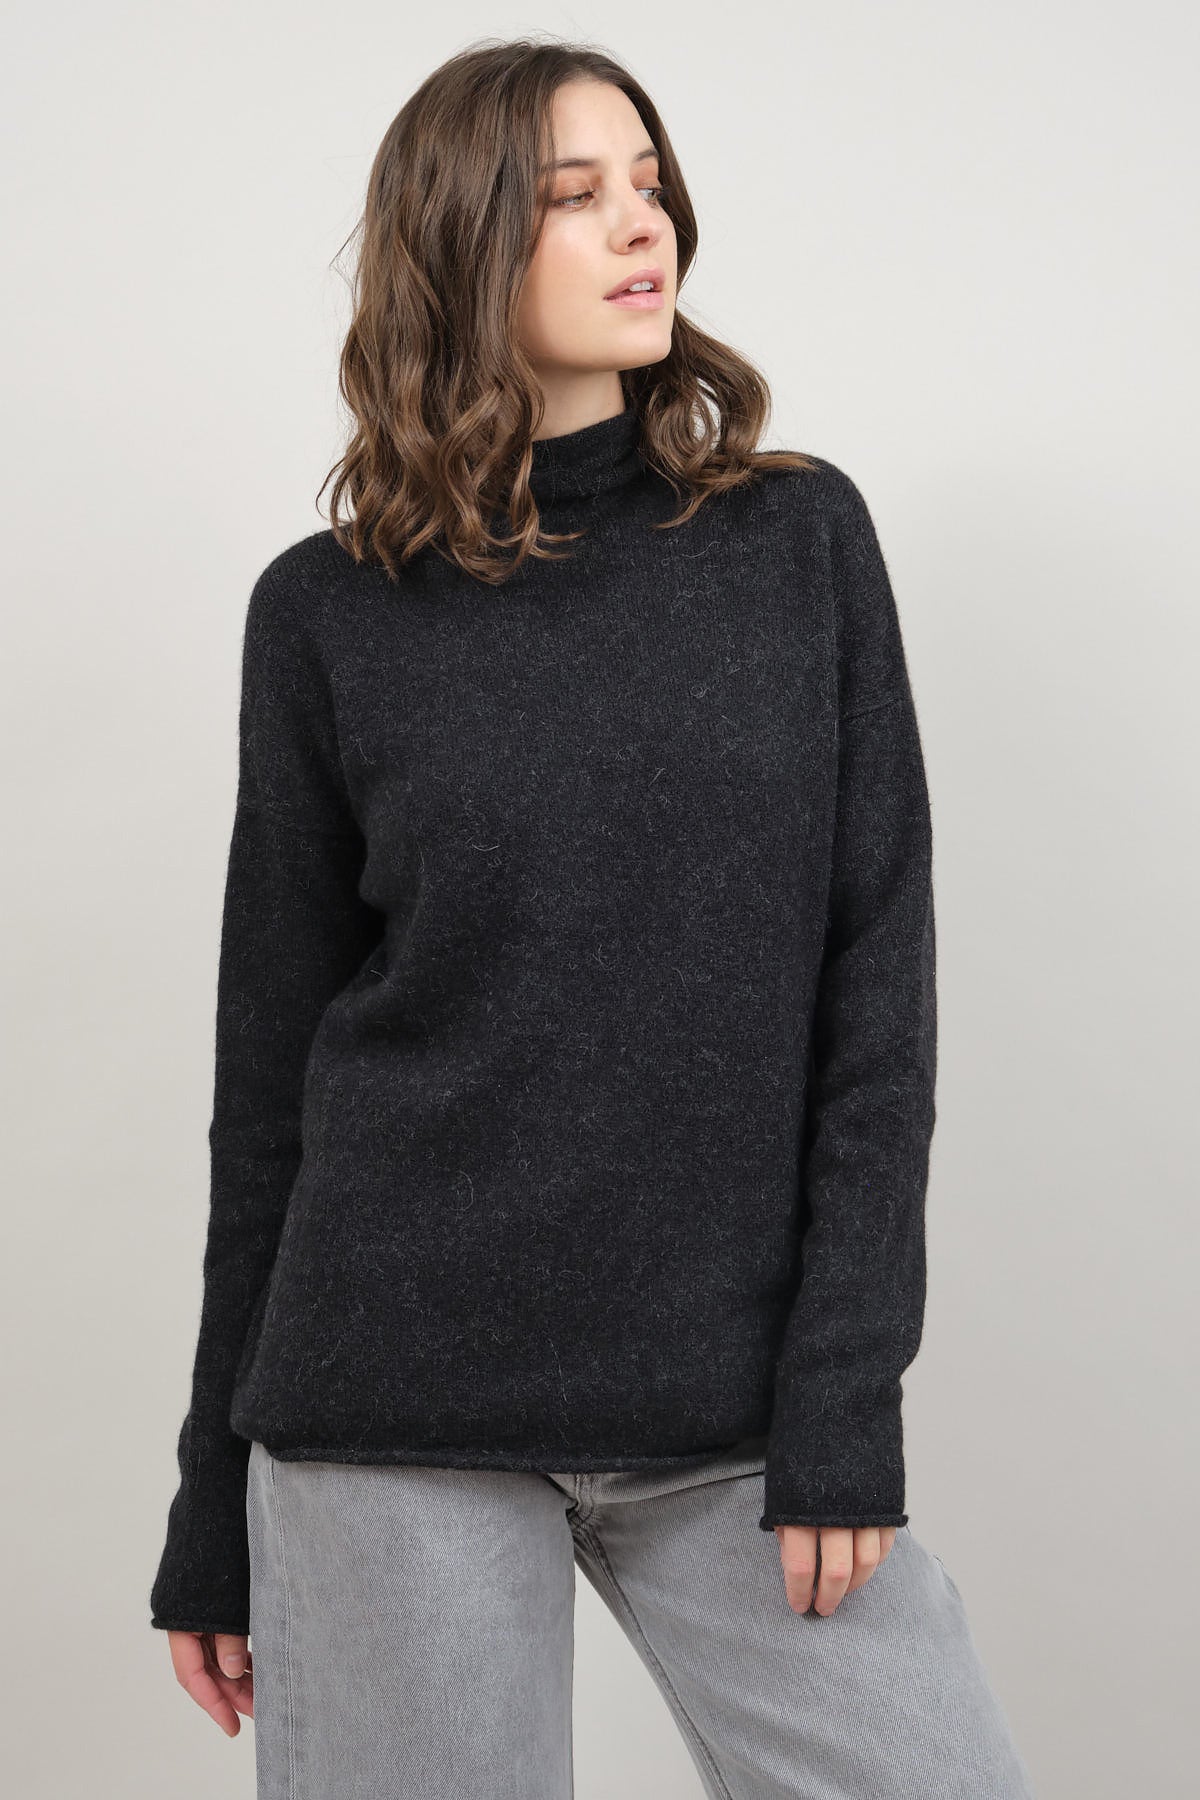 Soft Funnel Sweater in Black Melange